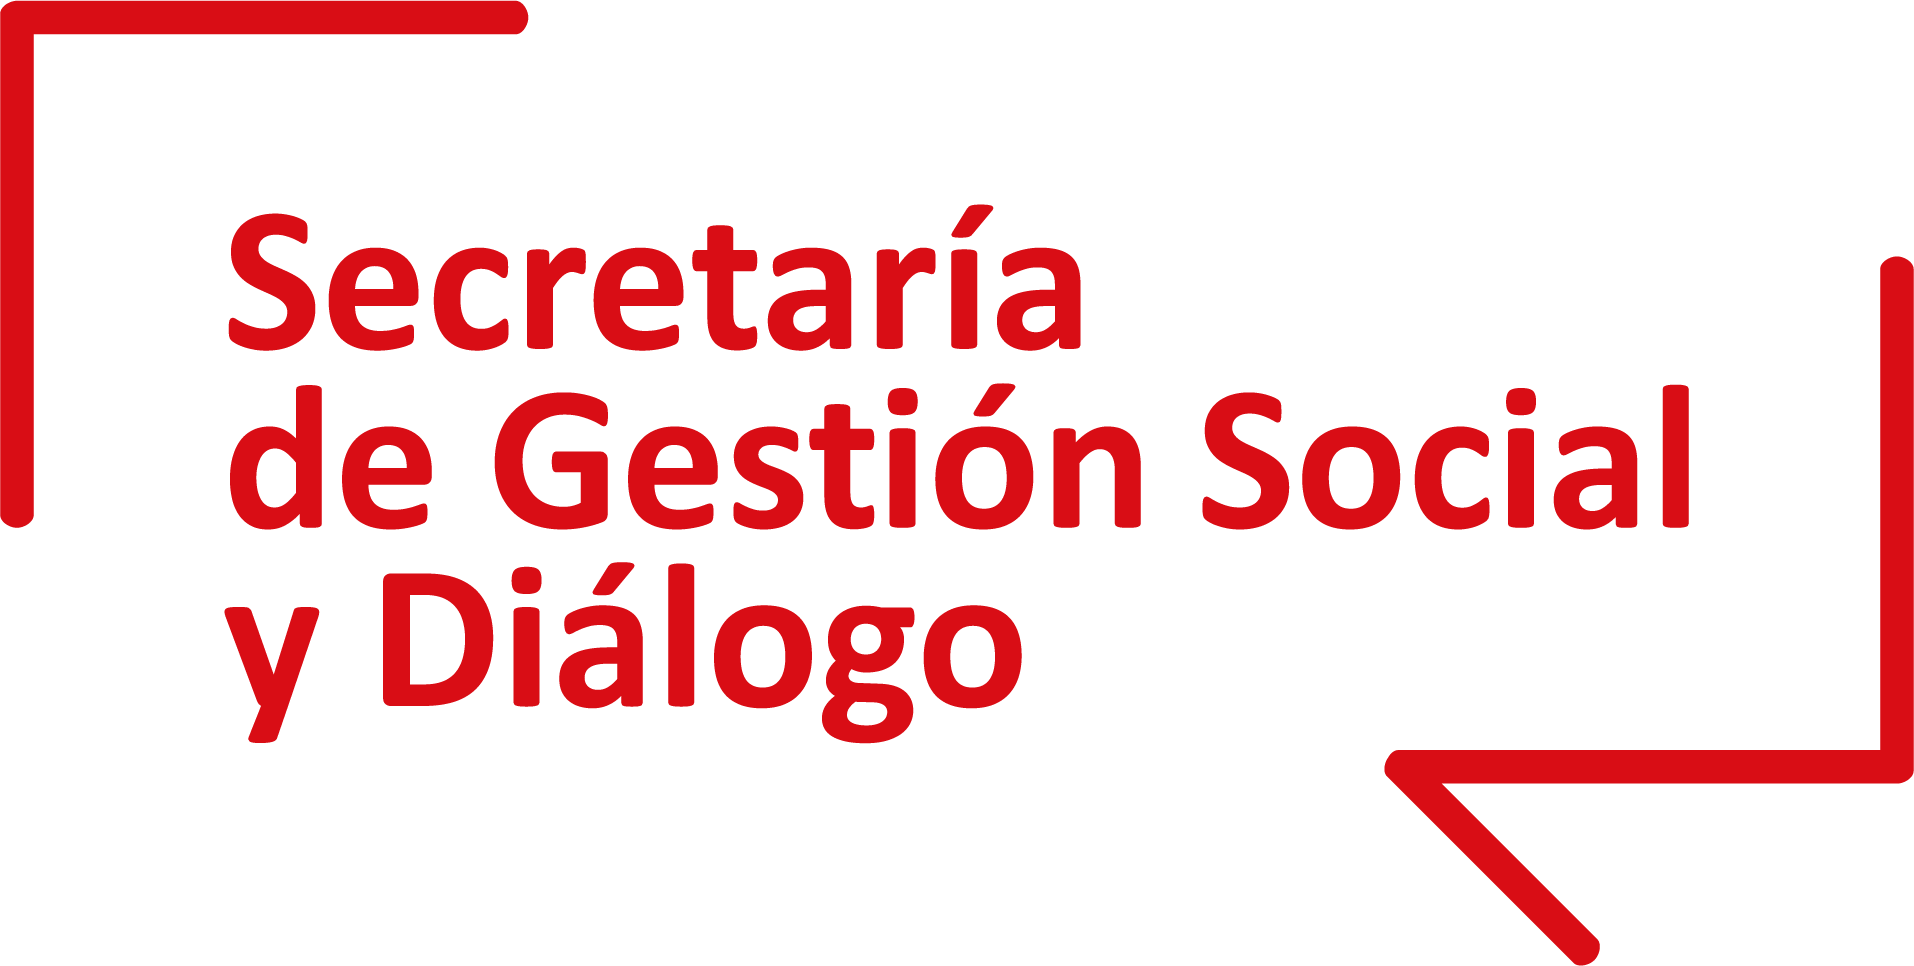 Secretaría de Gestión Social y Diálogo - Presidencia del Consejo de Ministros